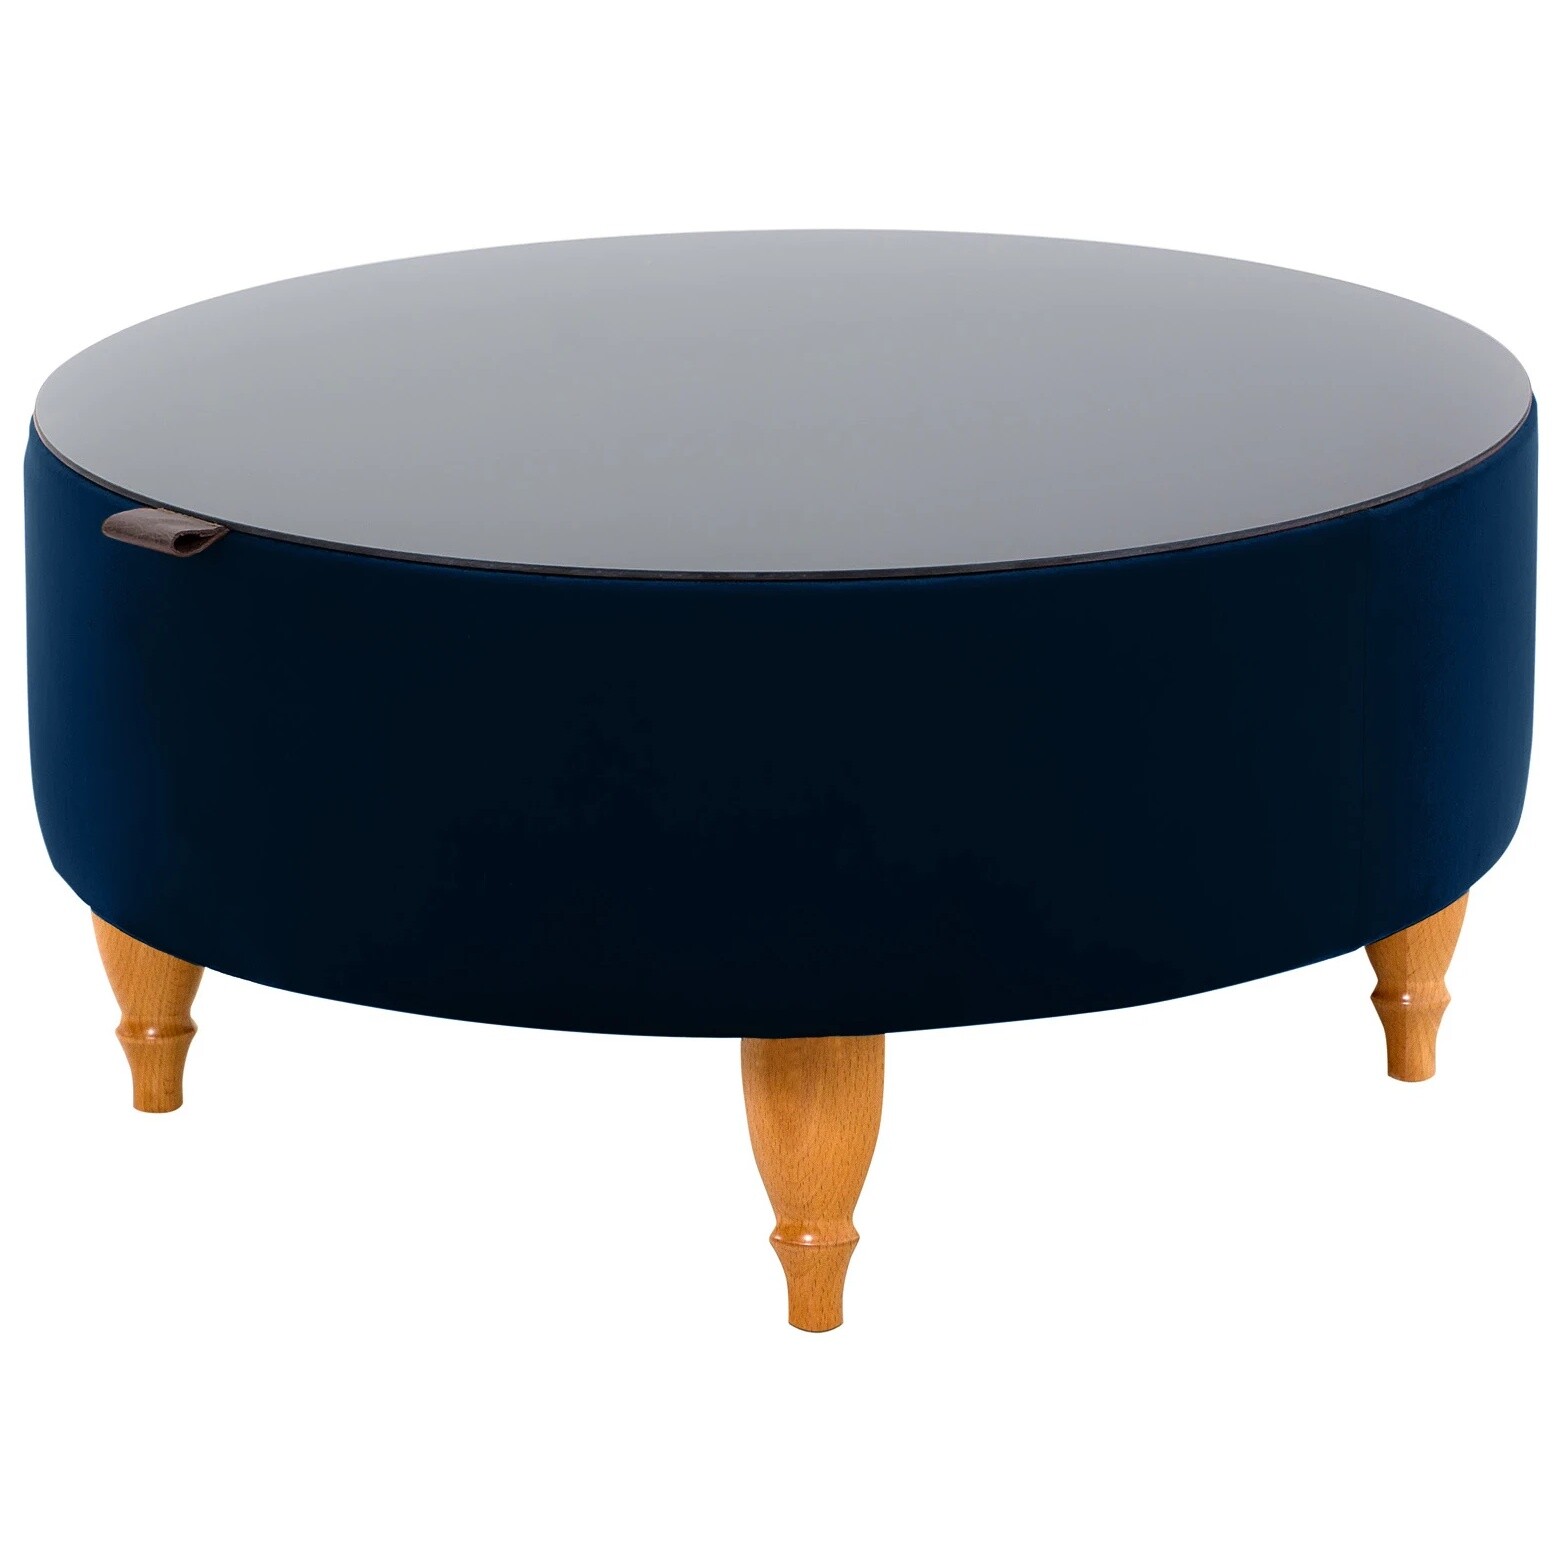 Журнальный столик круглый с ящиком для хранения 72 см синий, бук натуральный Italia Foxy 77